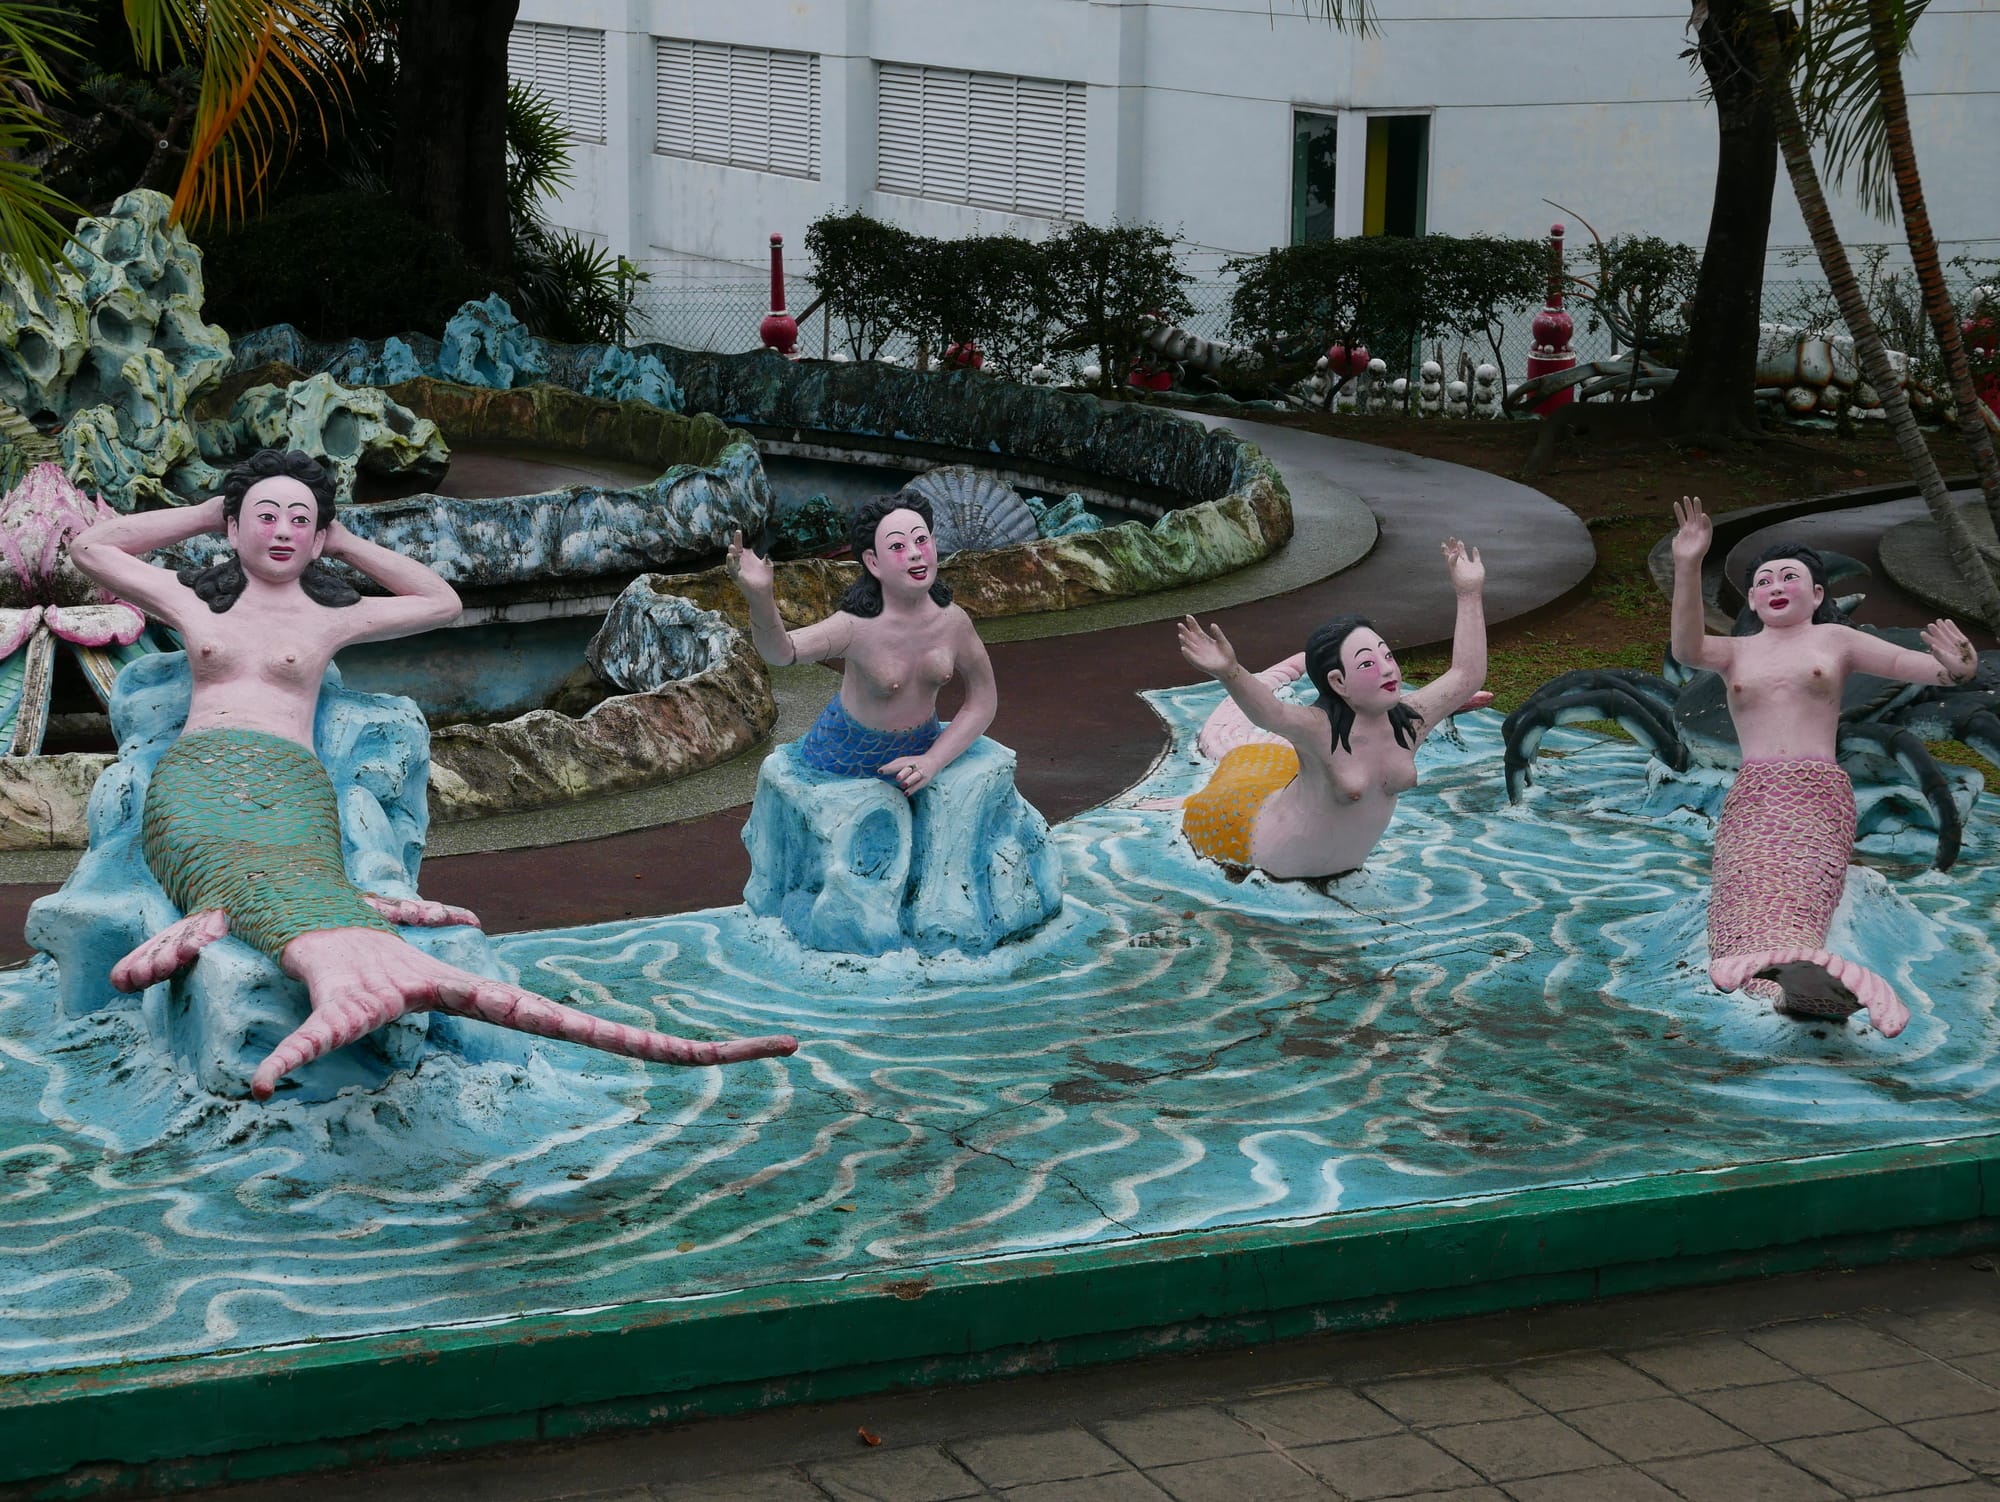 Photo by Author — Mermaids — Haw Par Villa, Singapore